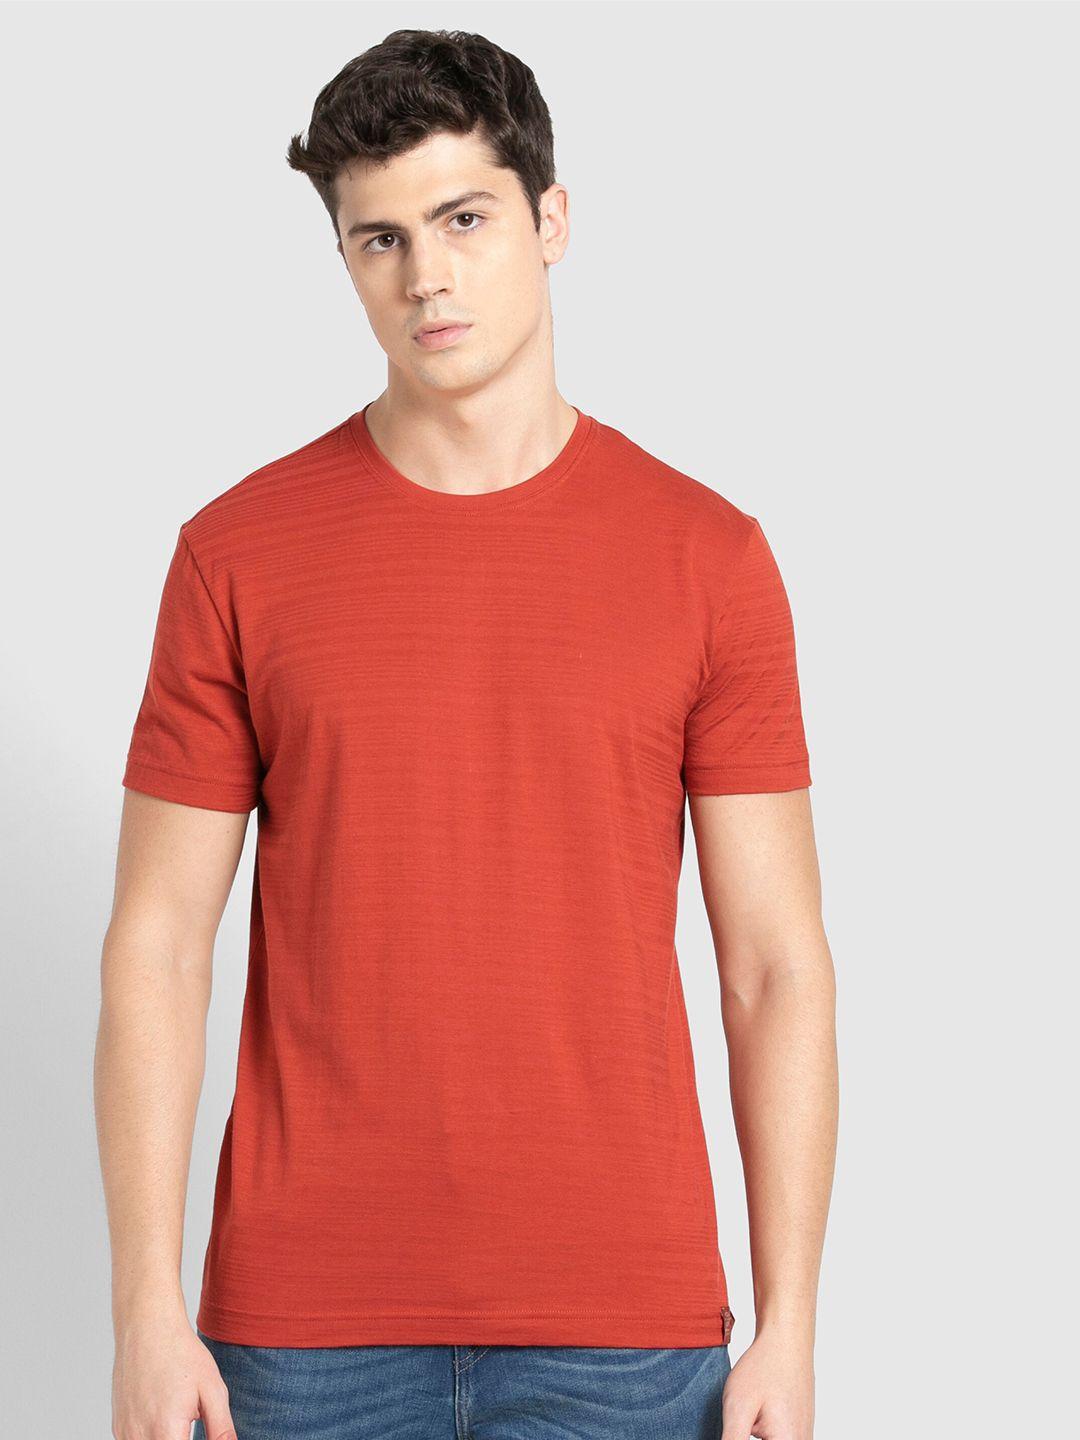 jockey-men-red-t-shirt